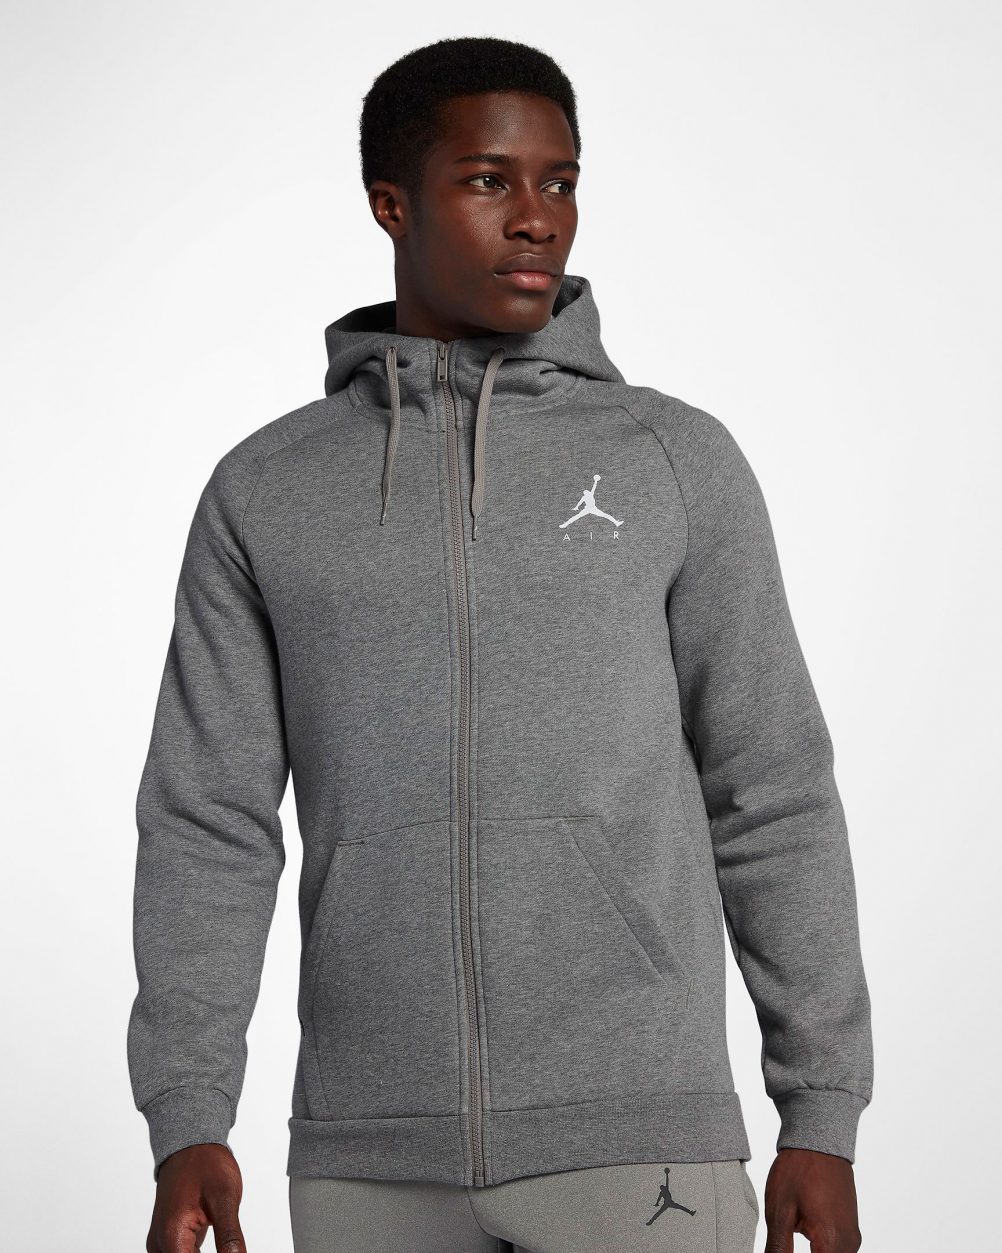 What to Wear with Air Jordan 12 Dark Grey | SneakerFits.com